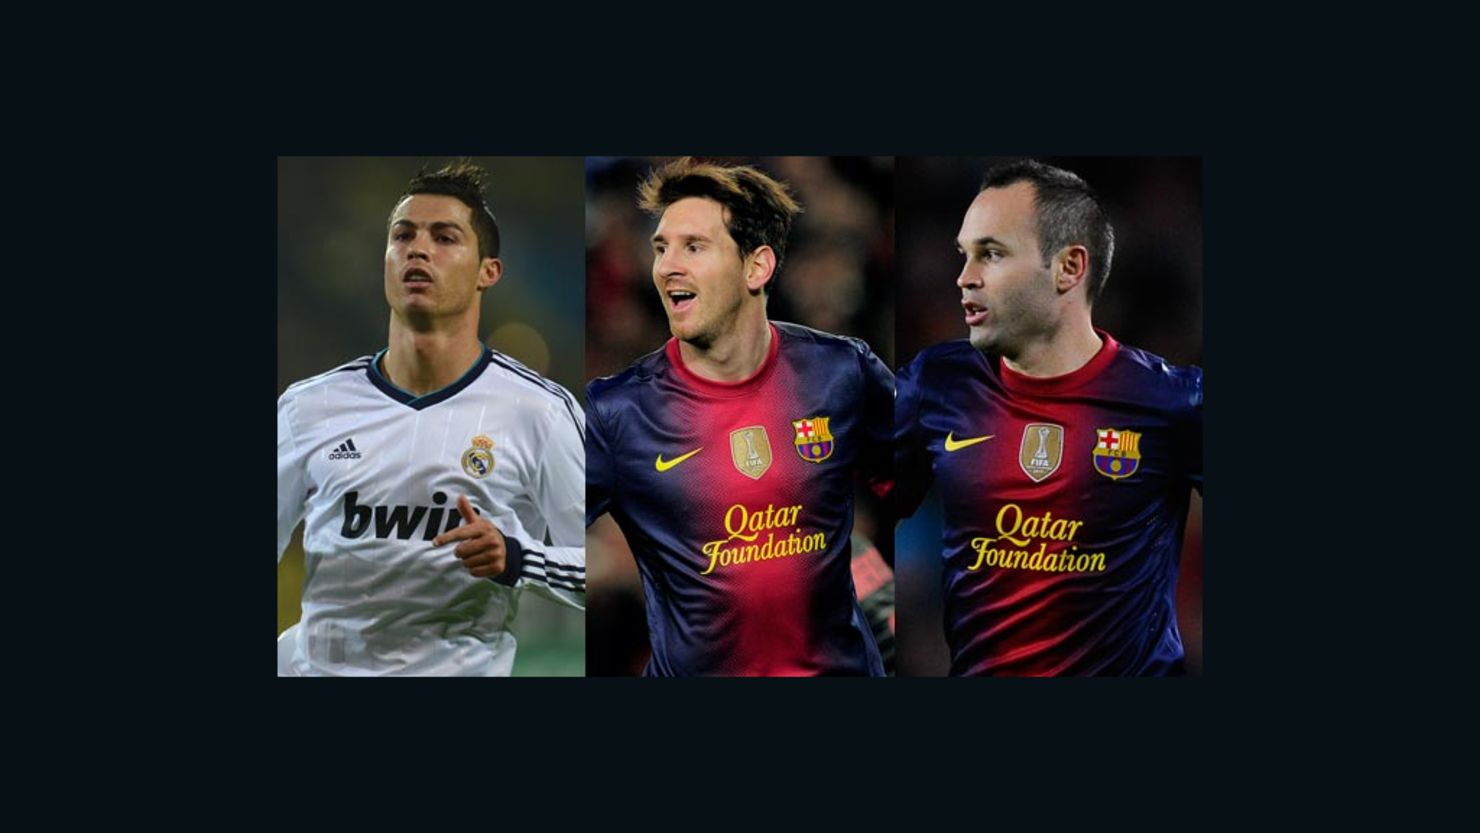 Cristiano Ronaldo, Lionel Messi and Andres Iniesta are the three contenders for the prestigious Ballon d'Or.